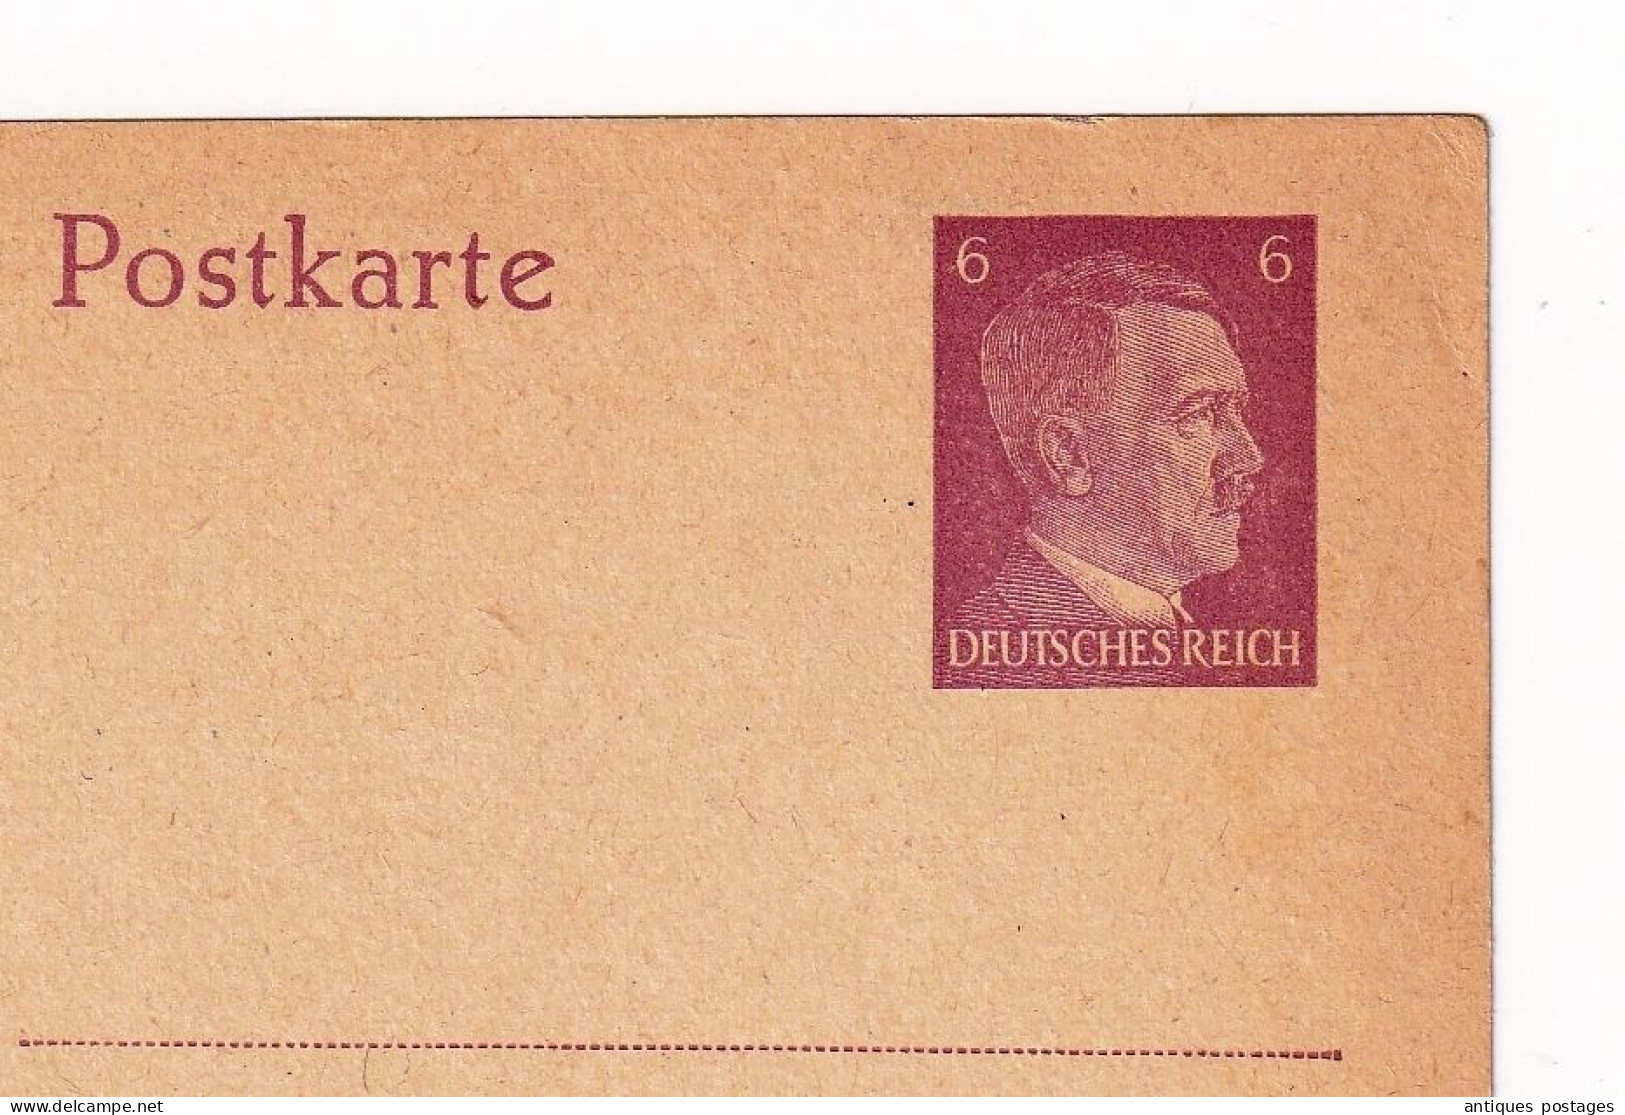 Postkarte Adolf Hitler Allemagne Deutschland Entier Postal Deutsches Reich - Postcards